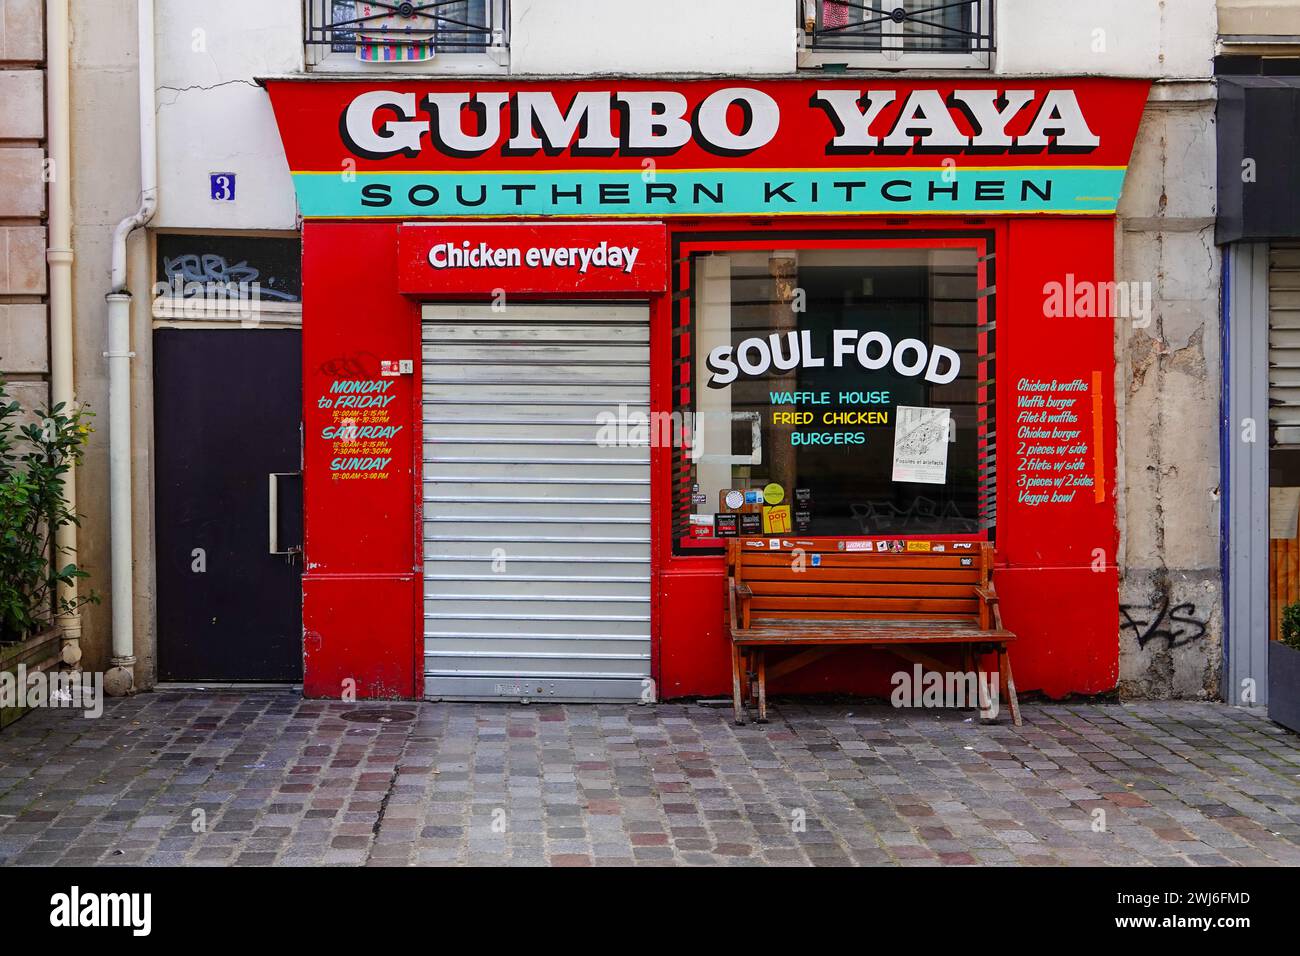 Gumbo Yaya, stile del sud, cibo soul, cucina del sud, ristorante, inclusi pollo e waffle, nel 10° arrondissement, Parigi, Francia. Foto Stock